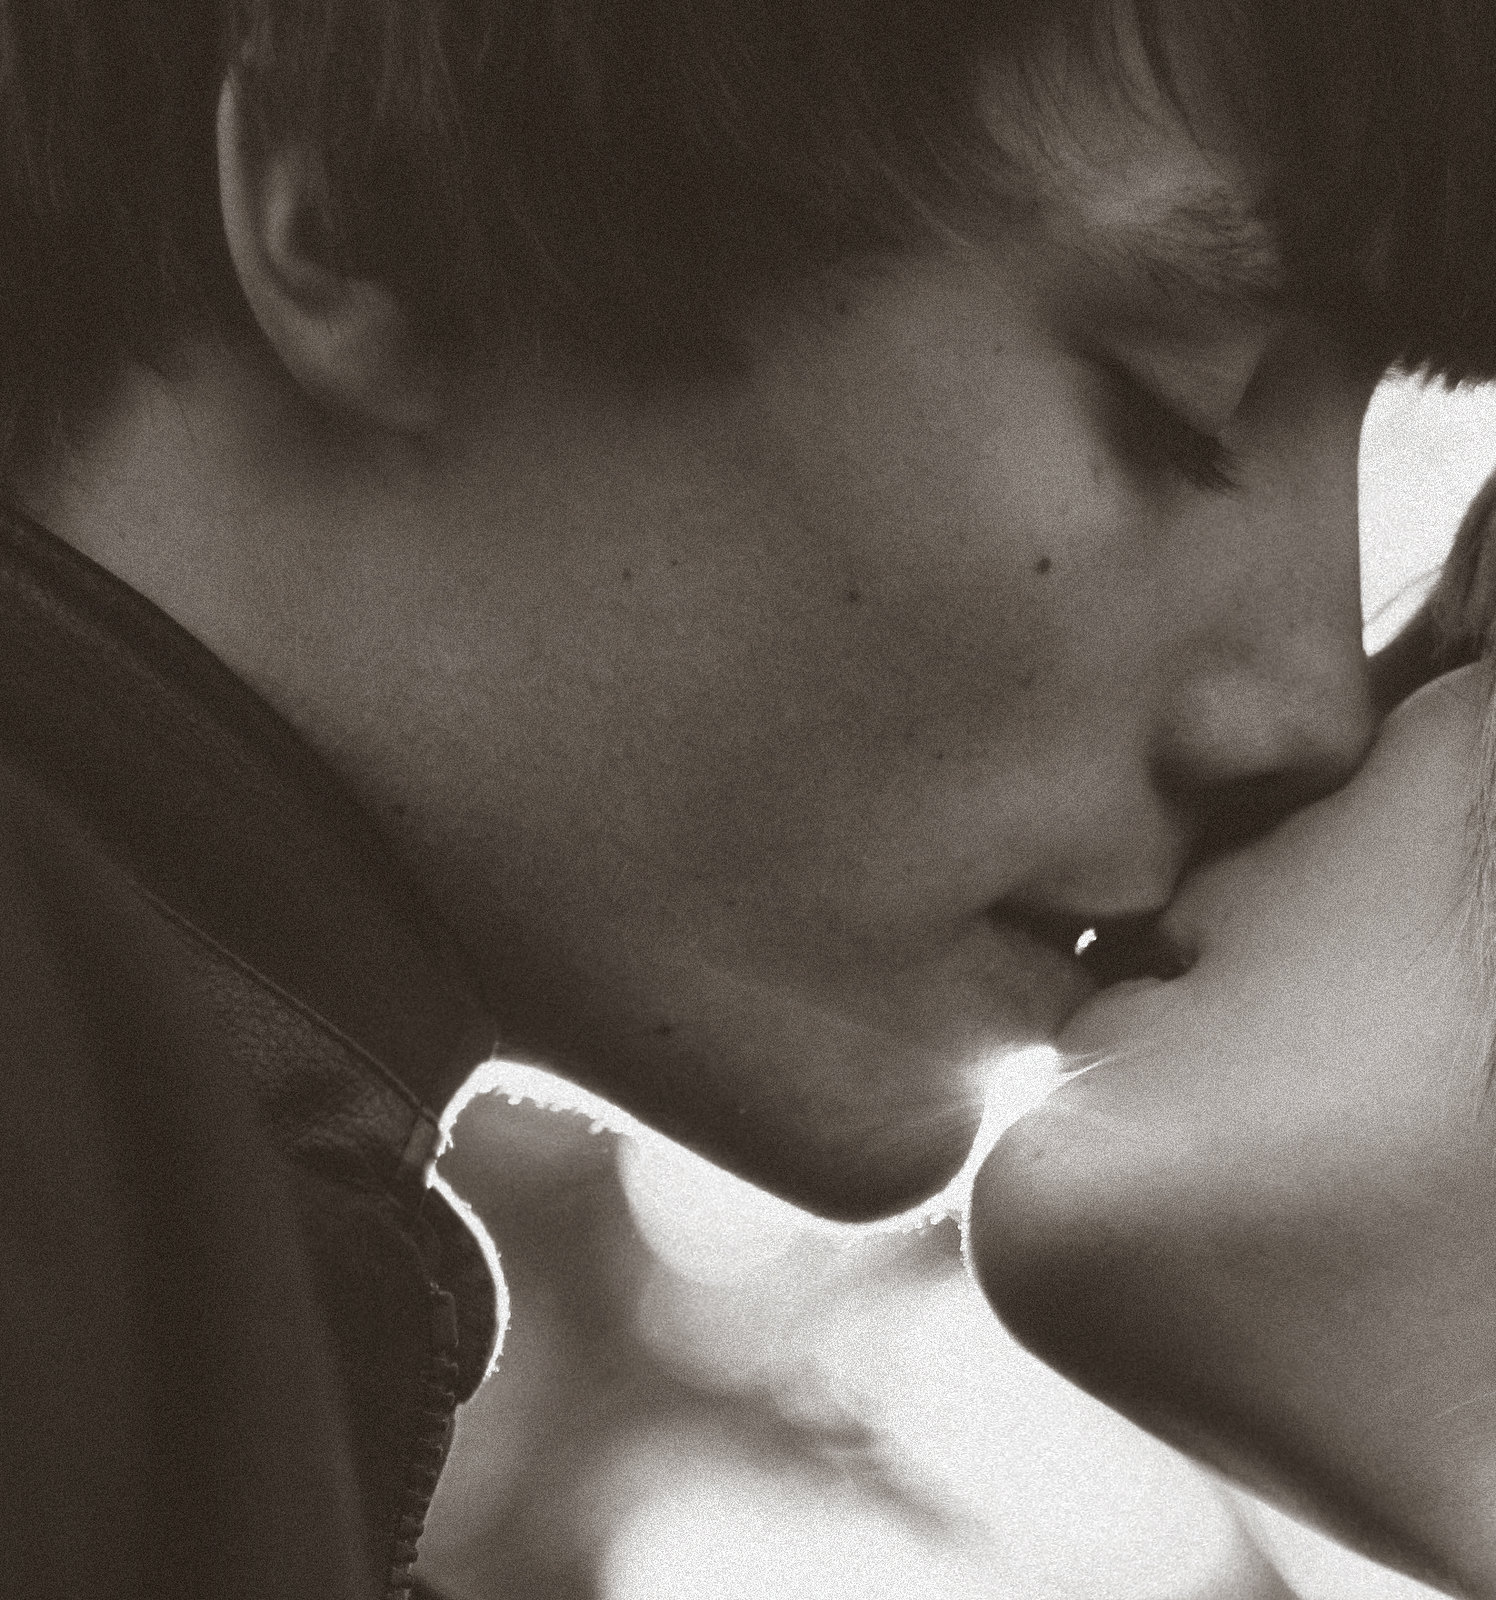 Тихо поцелую чувство тебе передам. Поцелуй. Первый поцелуй. Поцелуй в губы. Поцелуй картинки.